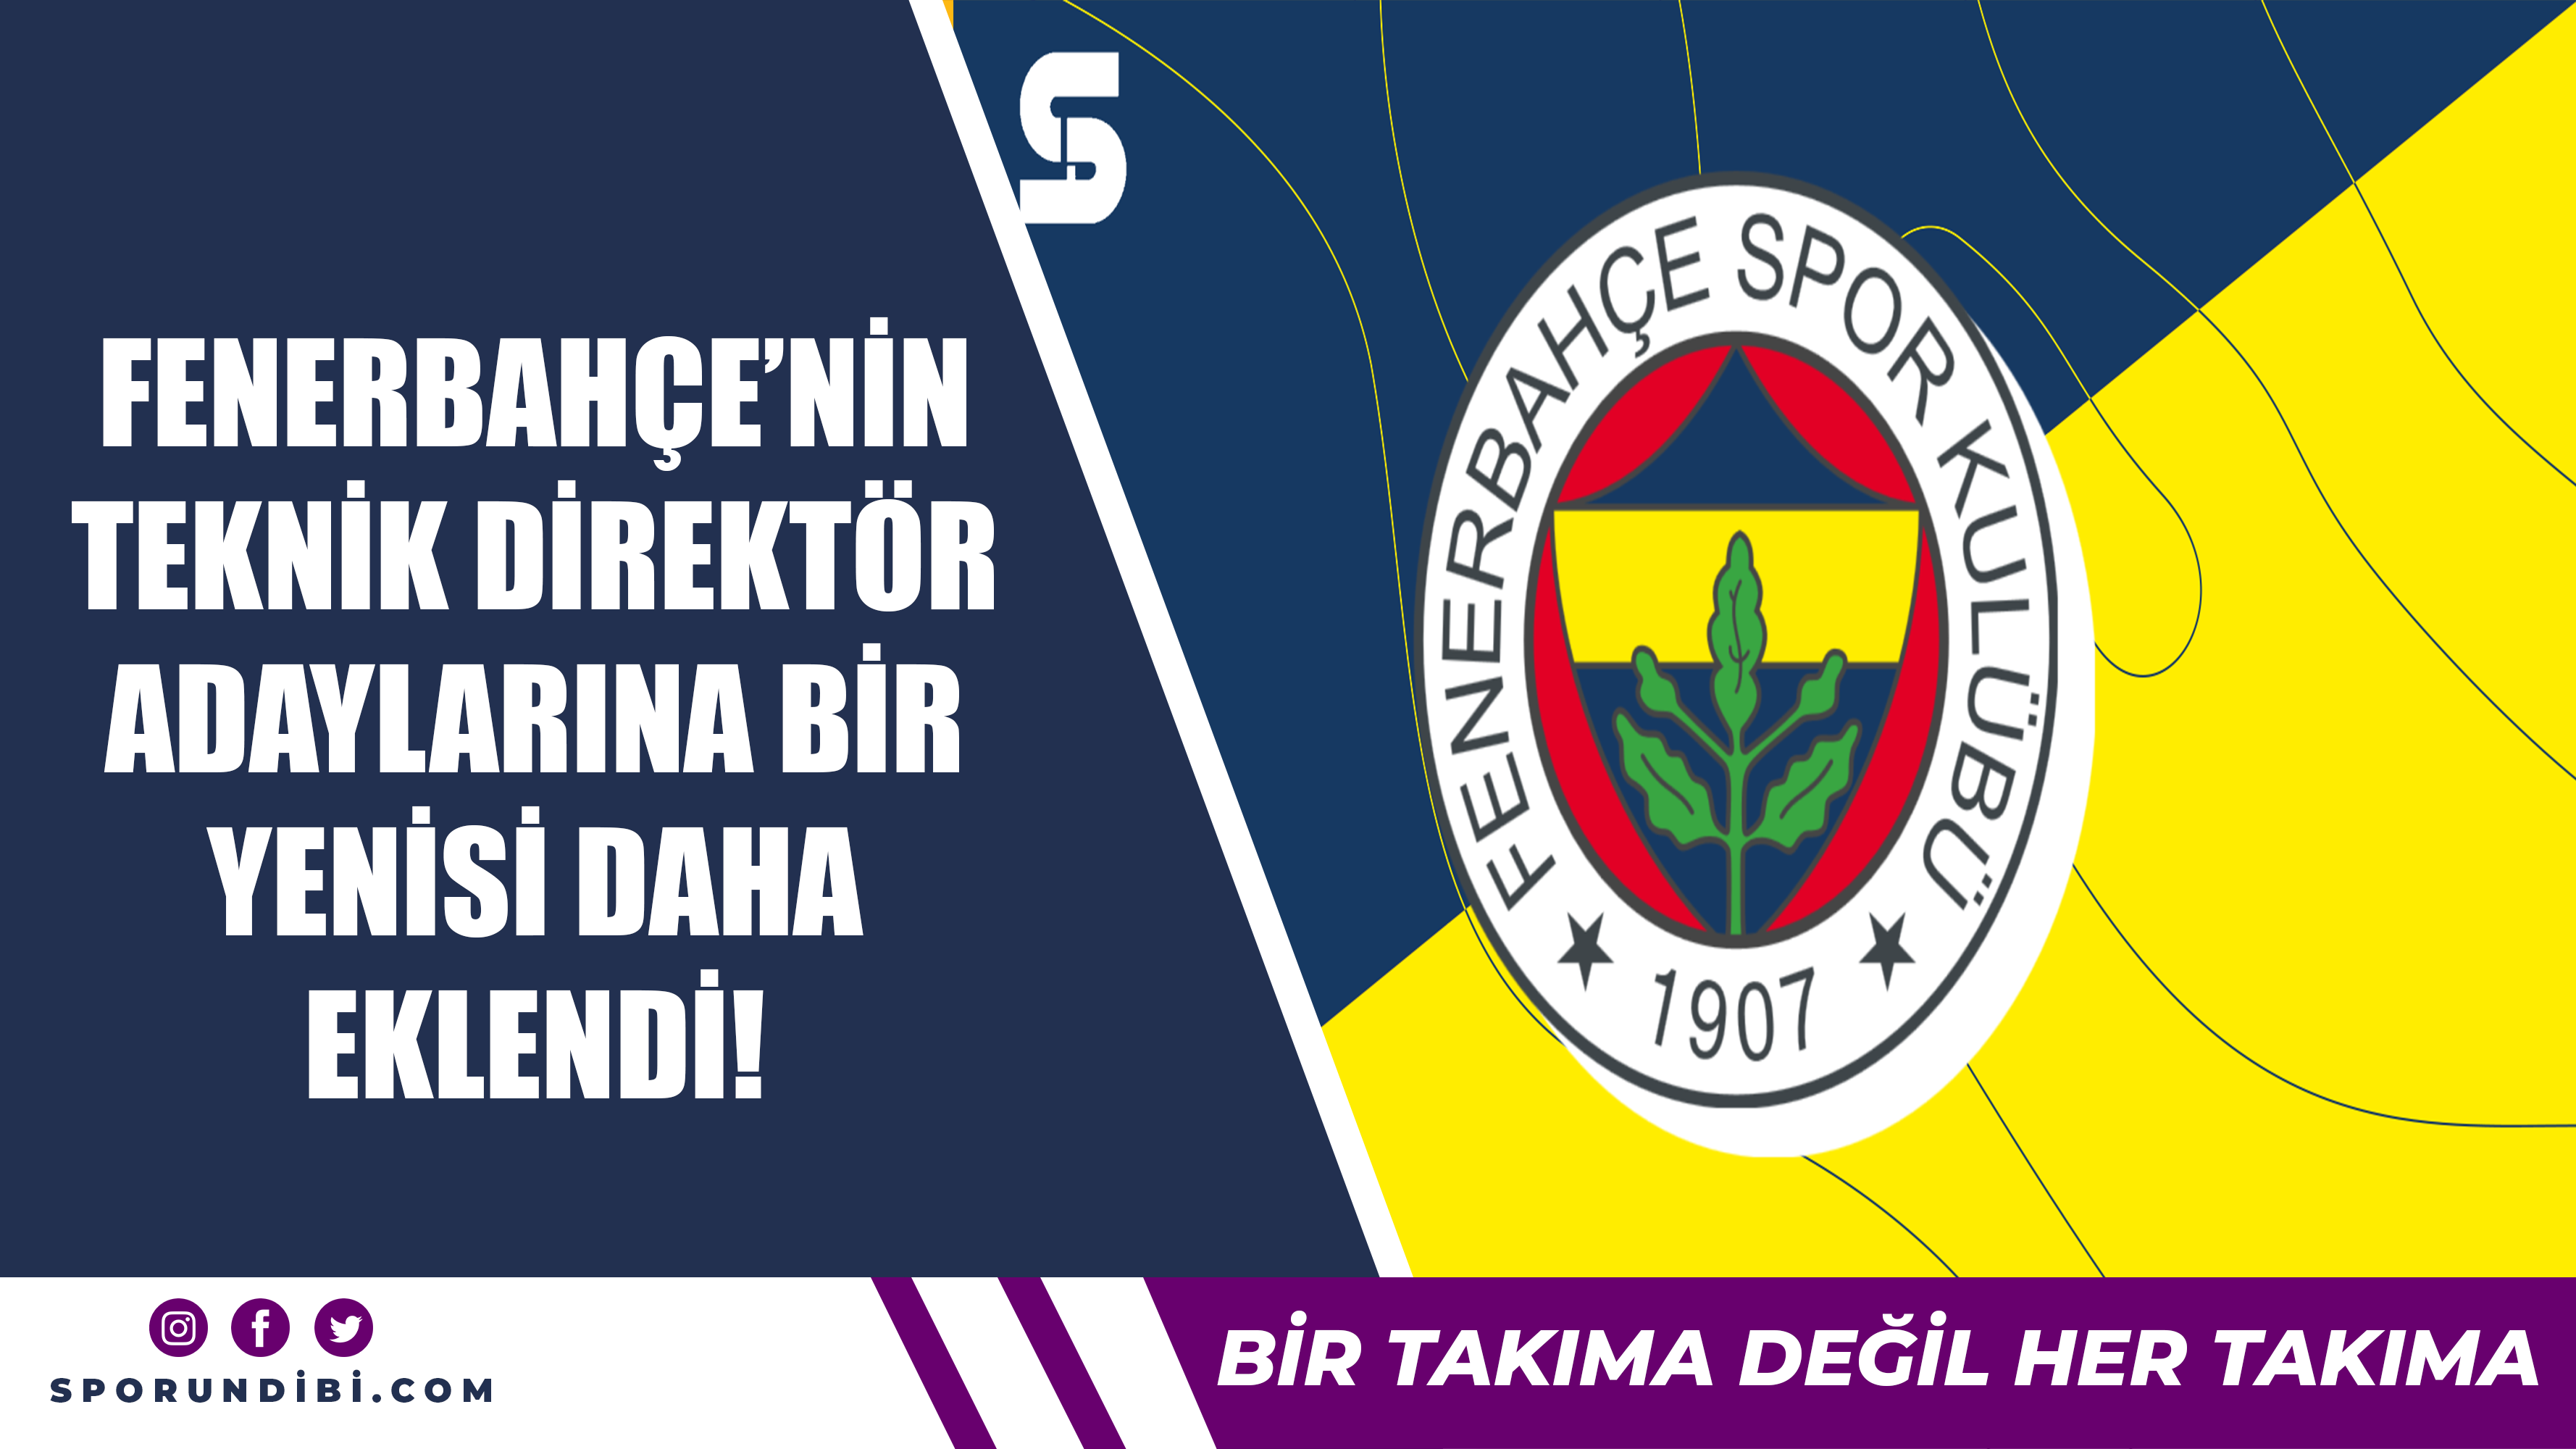 Fenerbahçe'nin teknik direktör adaylarına bir yenisi daha eklendi!